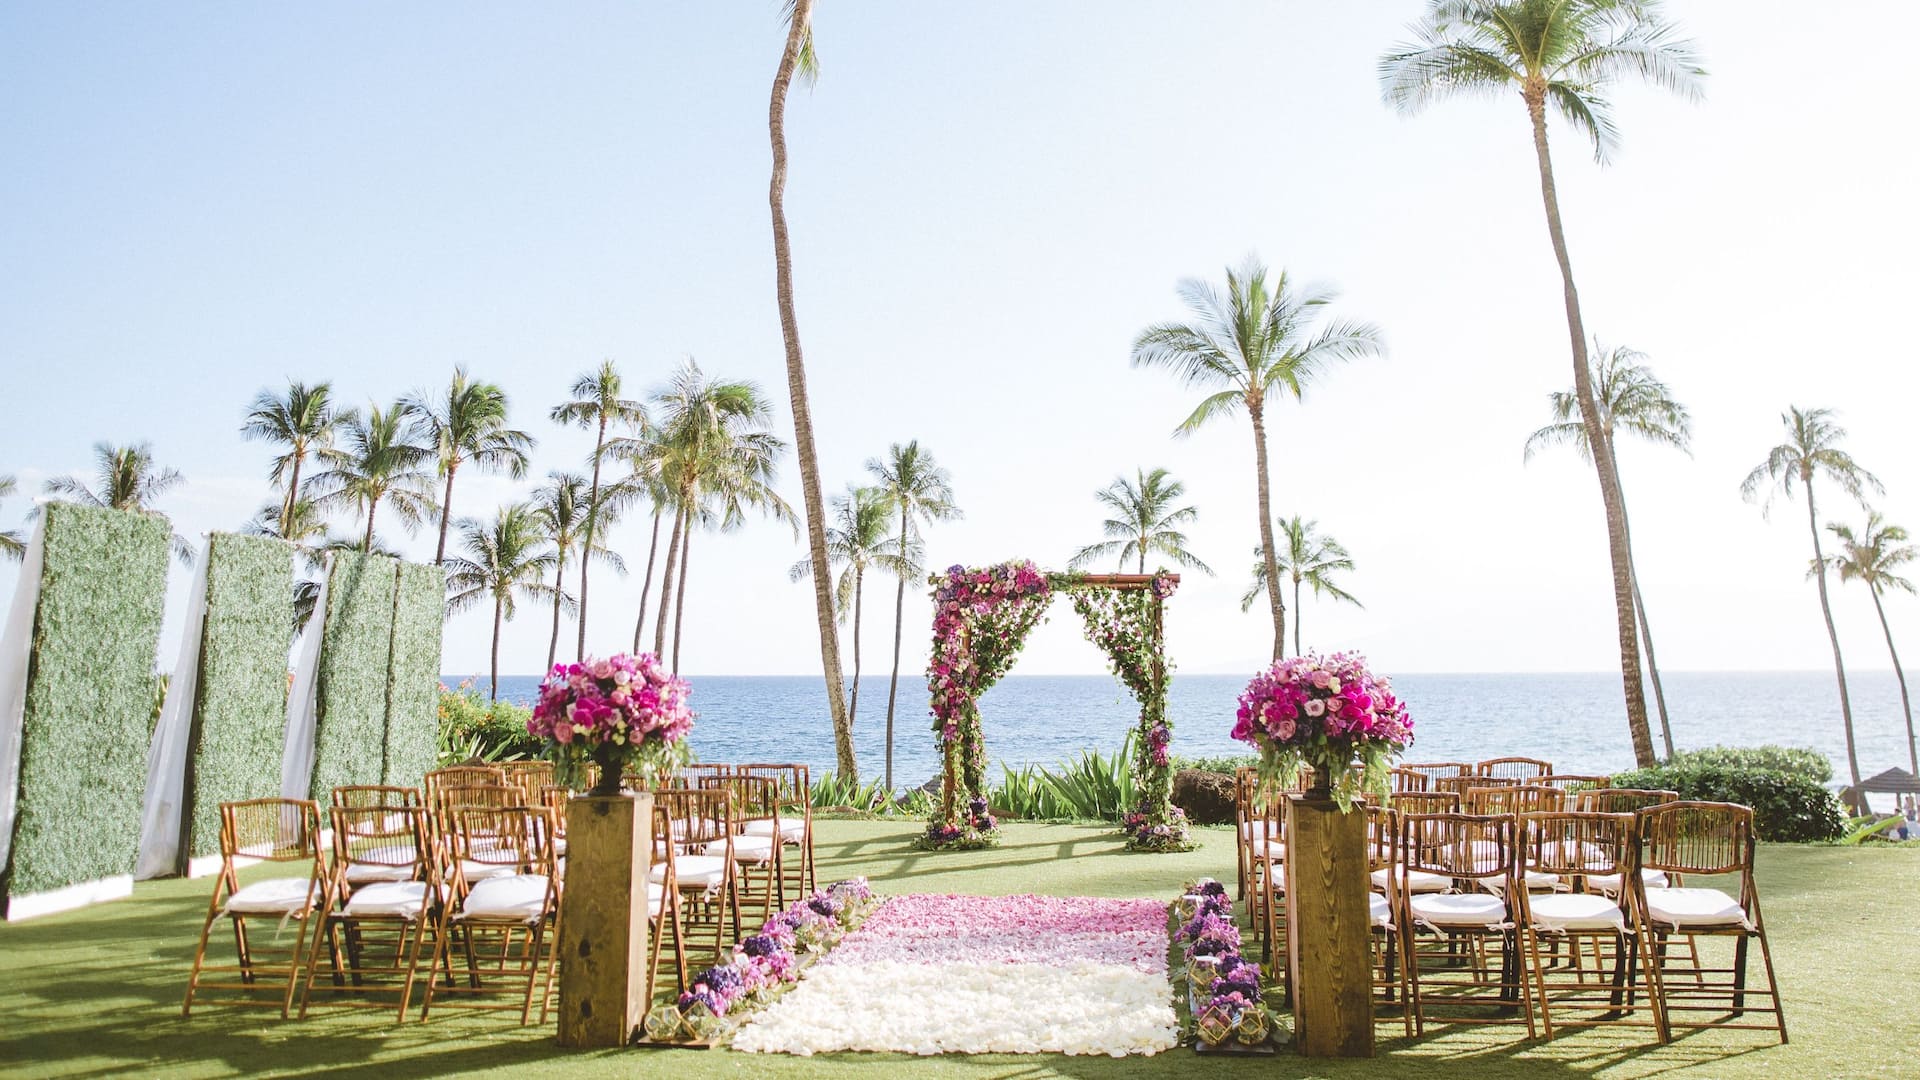 Outdoor wedding venue overlooking the ocean in Maui